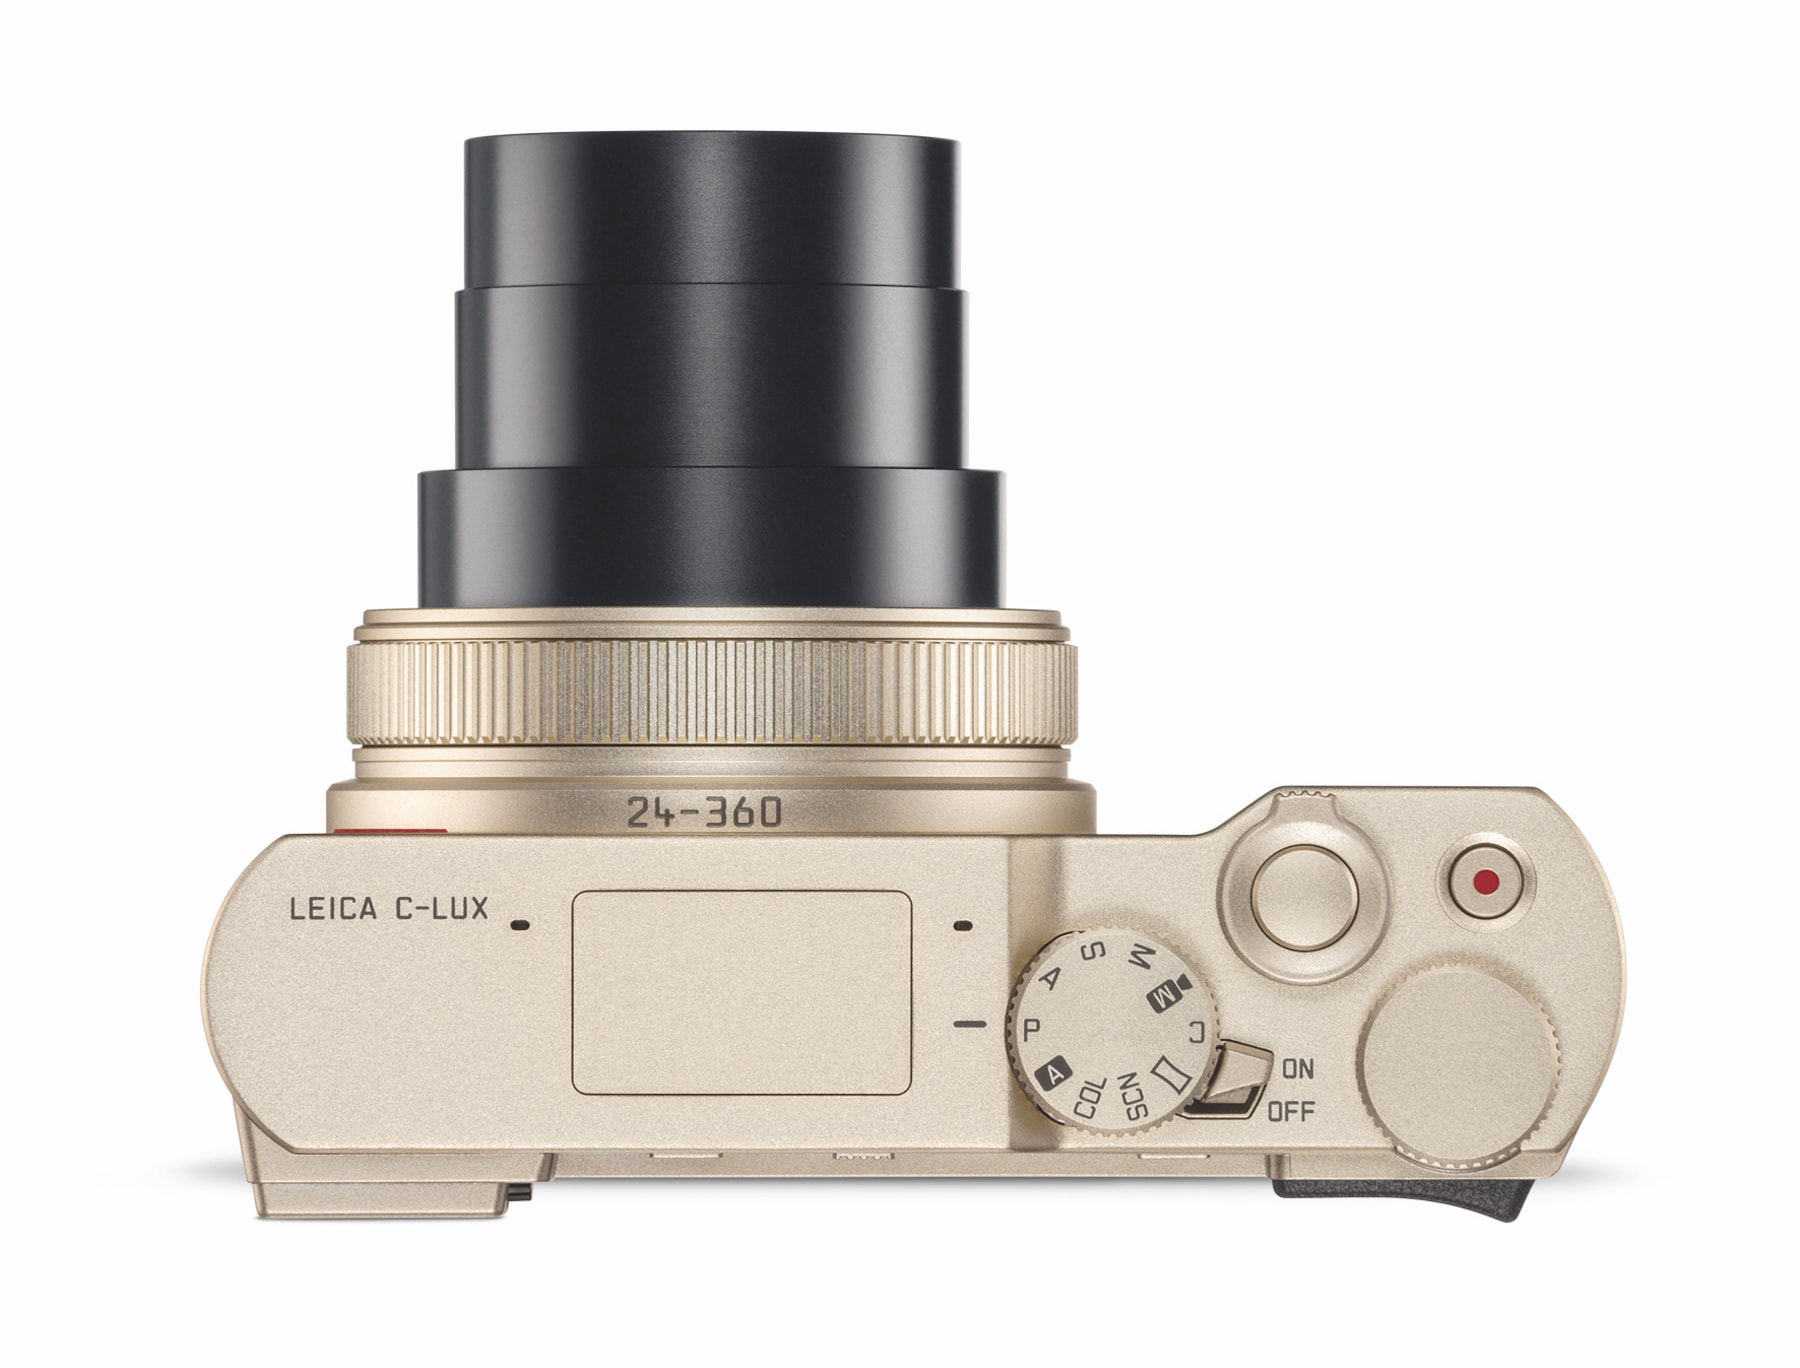 Leica 最新 15 倍光學變焦便擕相機 C-Lux 登場